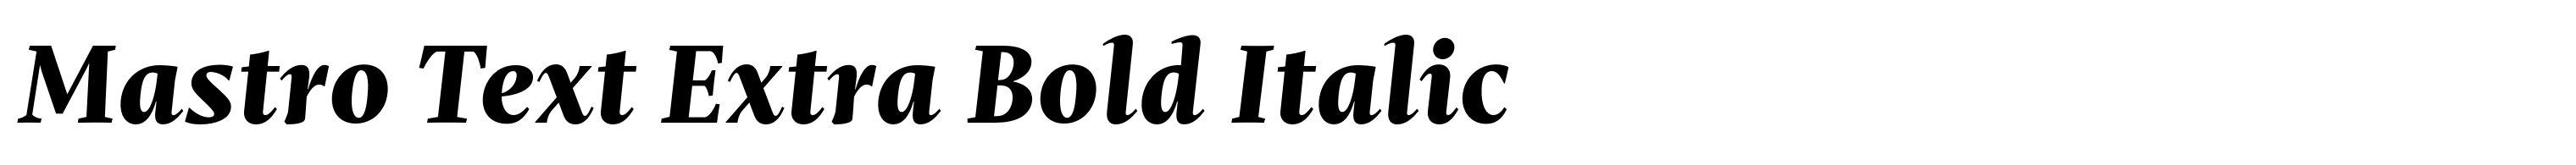 Mastro Text Extra Bold Italic